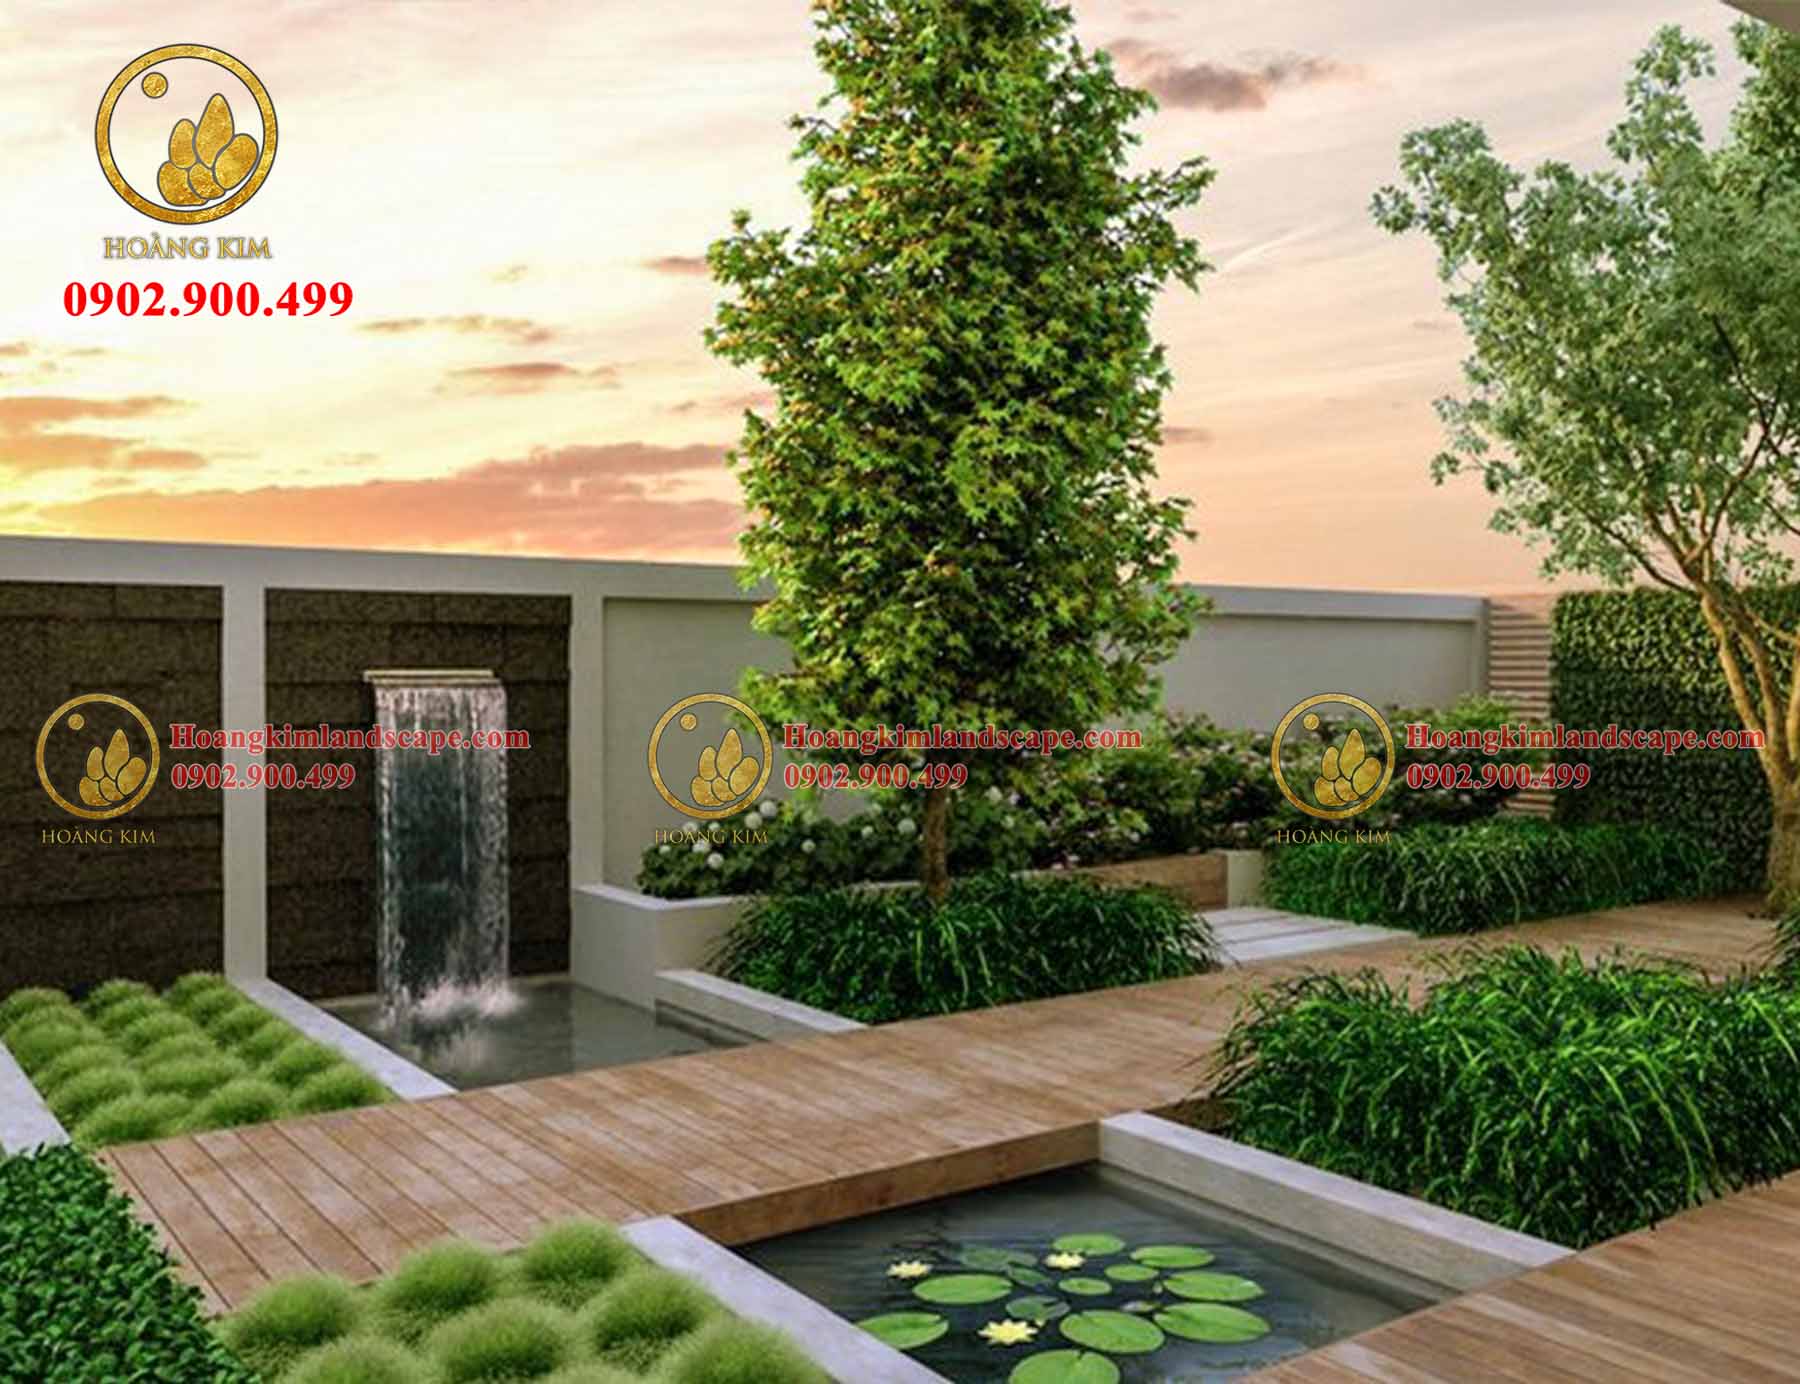 Thiết kế vườn cây xanh trên sân thượng tạo nên một không gian tươi mát và thoáng đãng